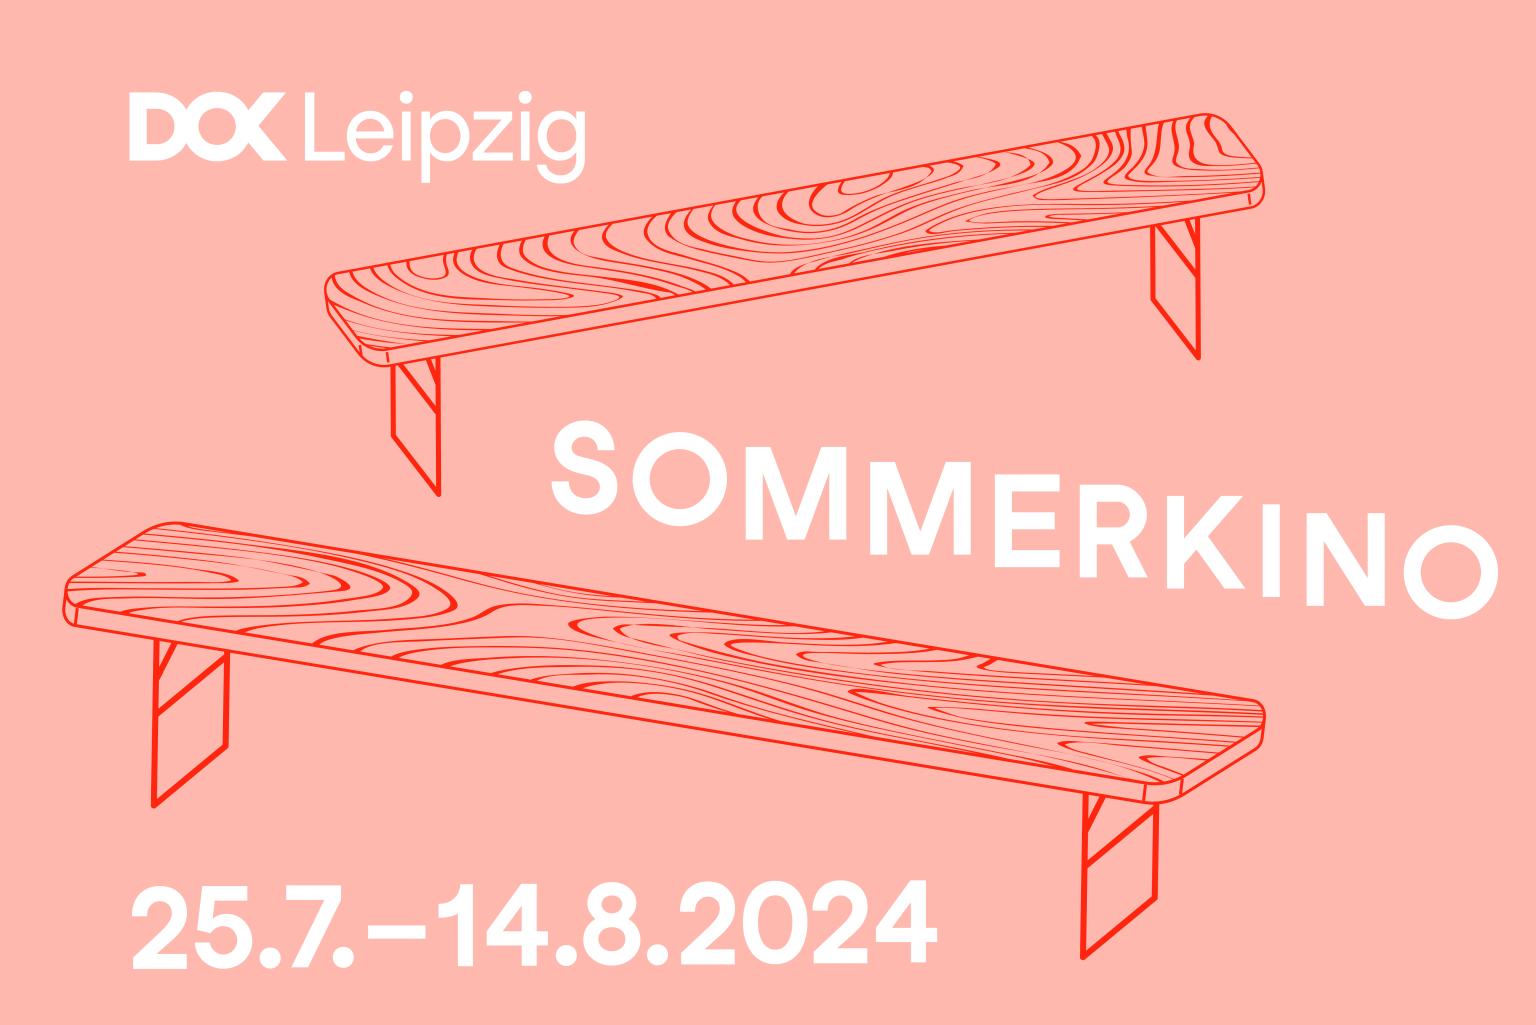 Grafik: zwei Bänke mit schick fließender Holzmusterung stehen zwischen den Worten: DOK Leipzig Sommerkino, 25.7.-14.8.2024